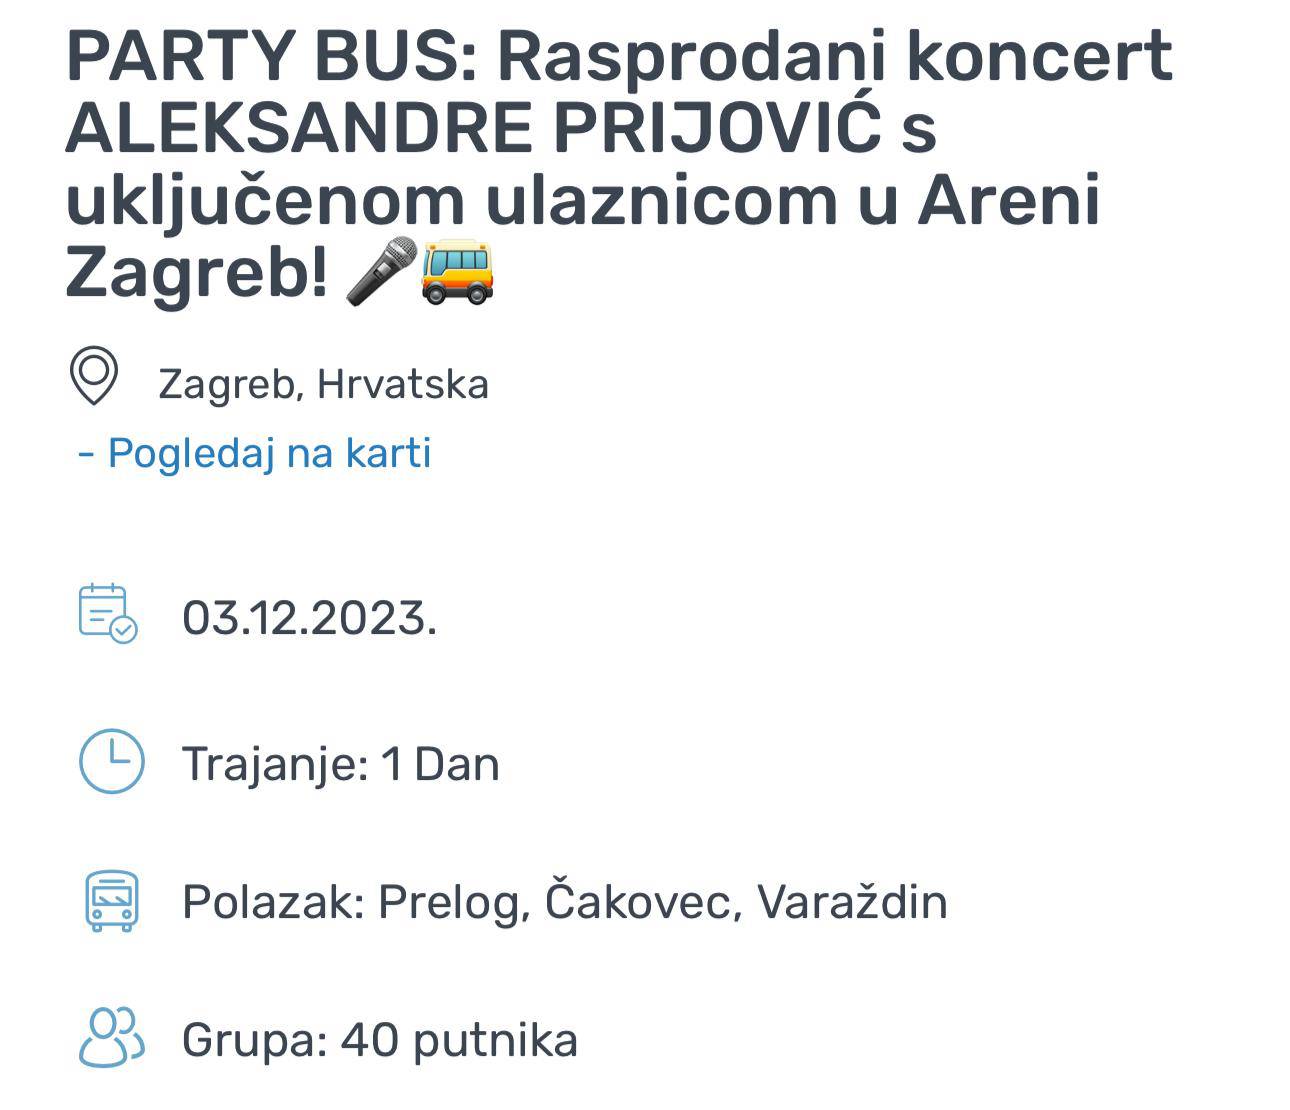 Karte za Prijović preprodaju se po suludim cijenama, a neki su čak organizirali i party bus!